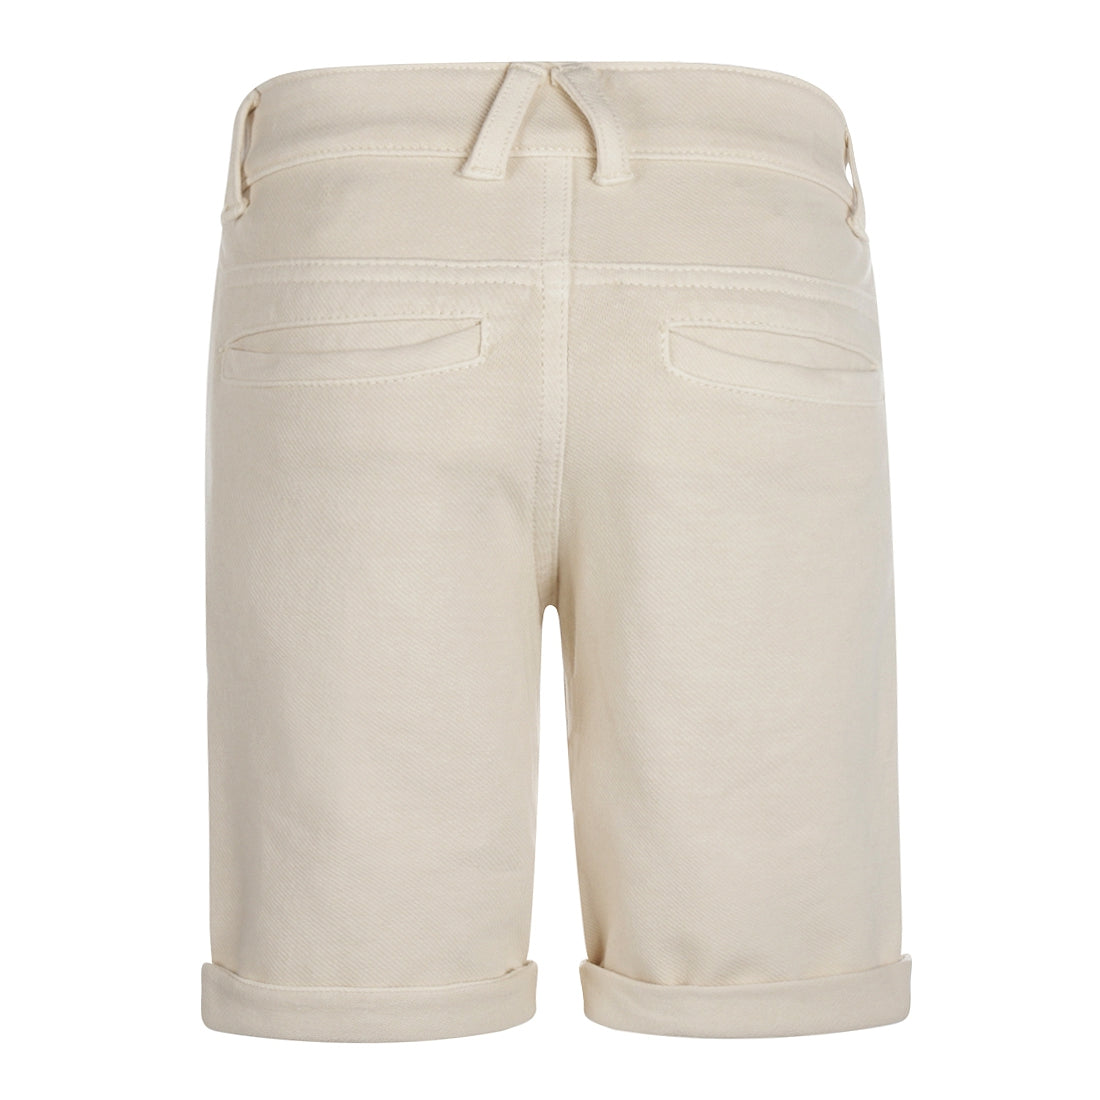 Jongens Shorts van No Way Monday in de kleur  Off white in maat 164.